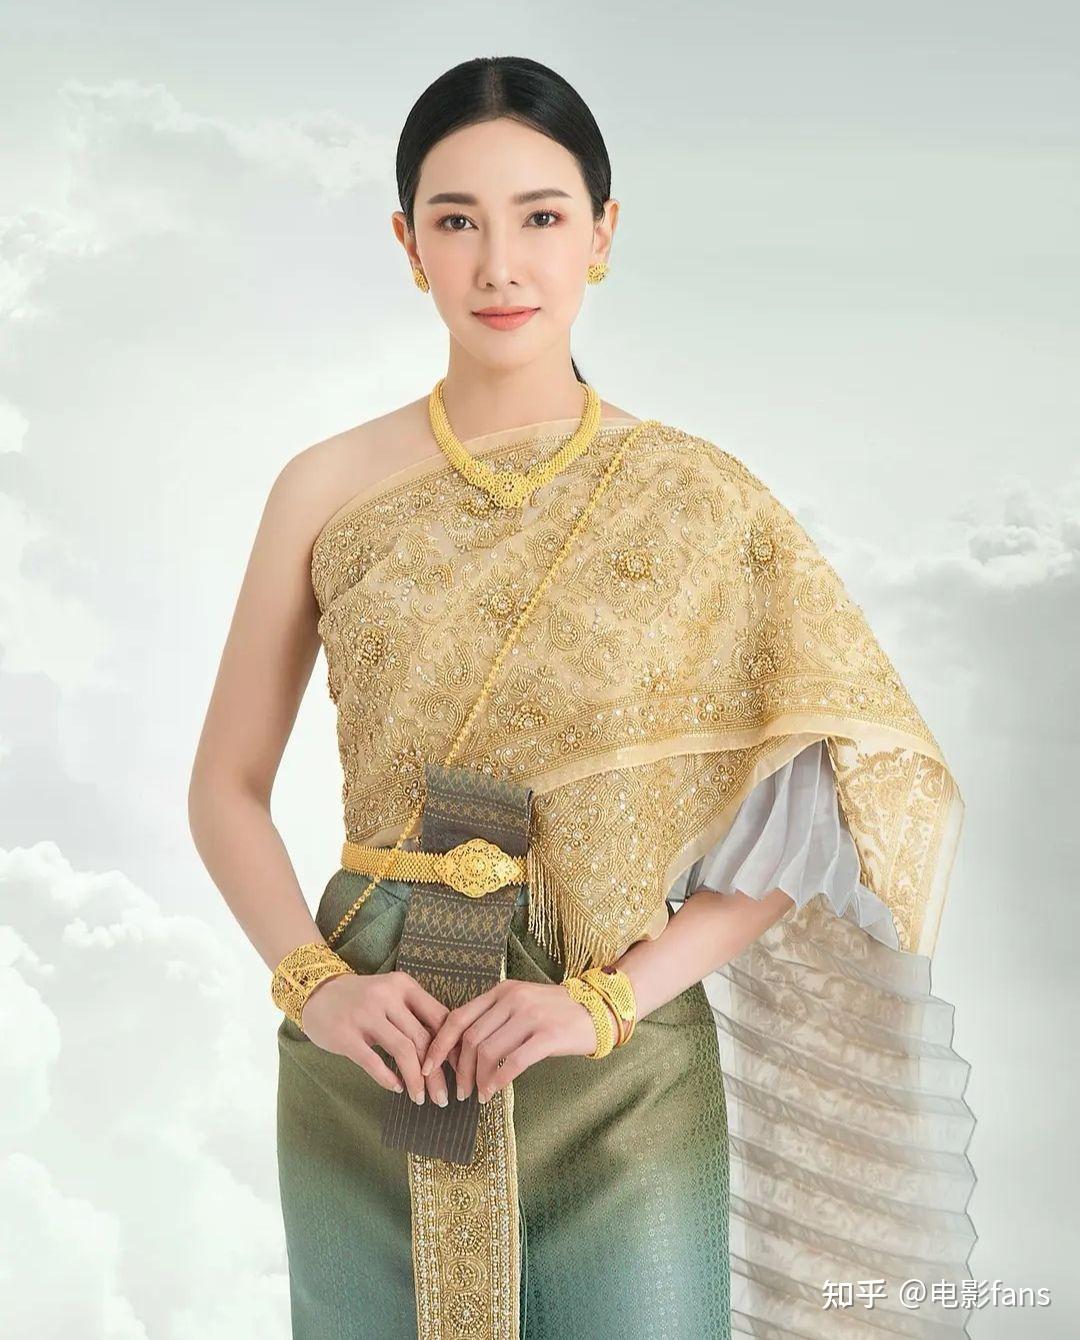 如何评价泰国女演员沃拉娜特·旺萨莞?